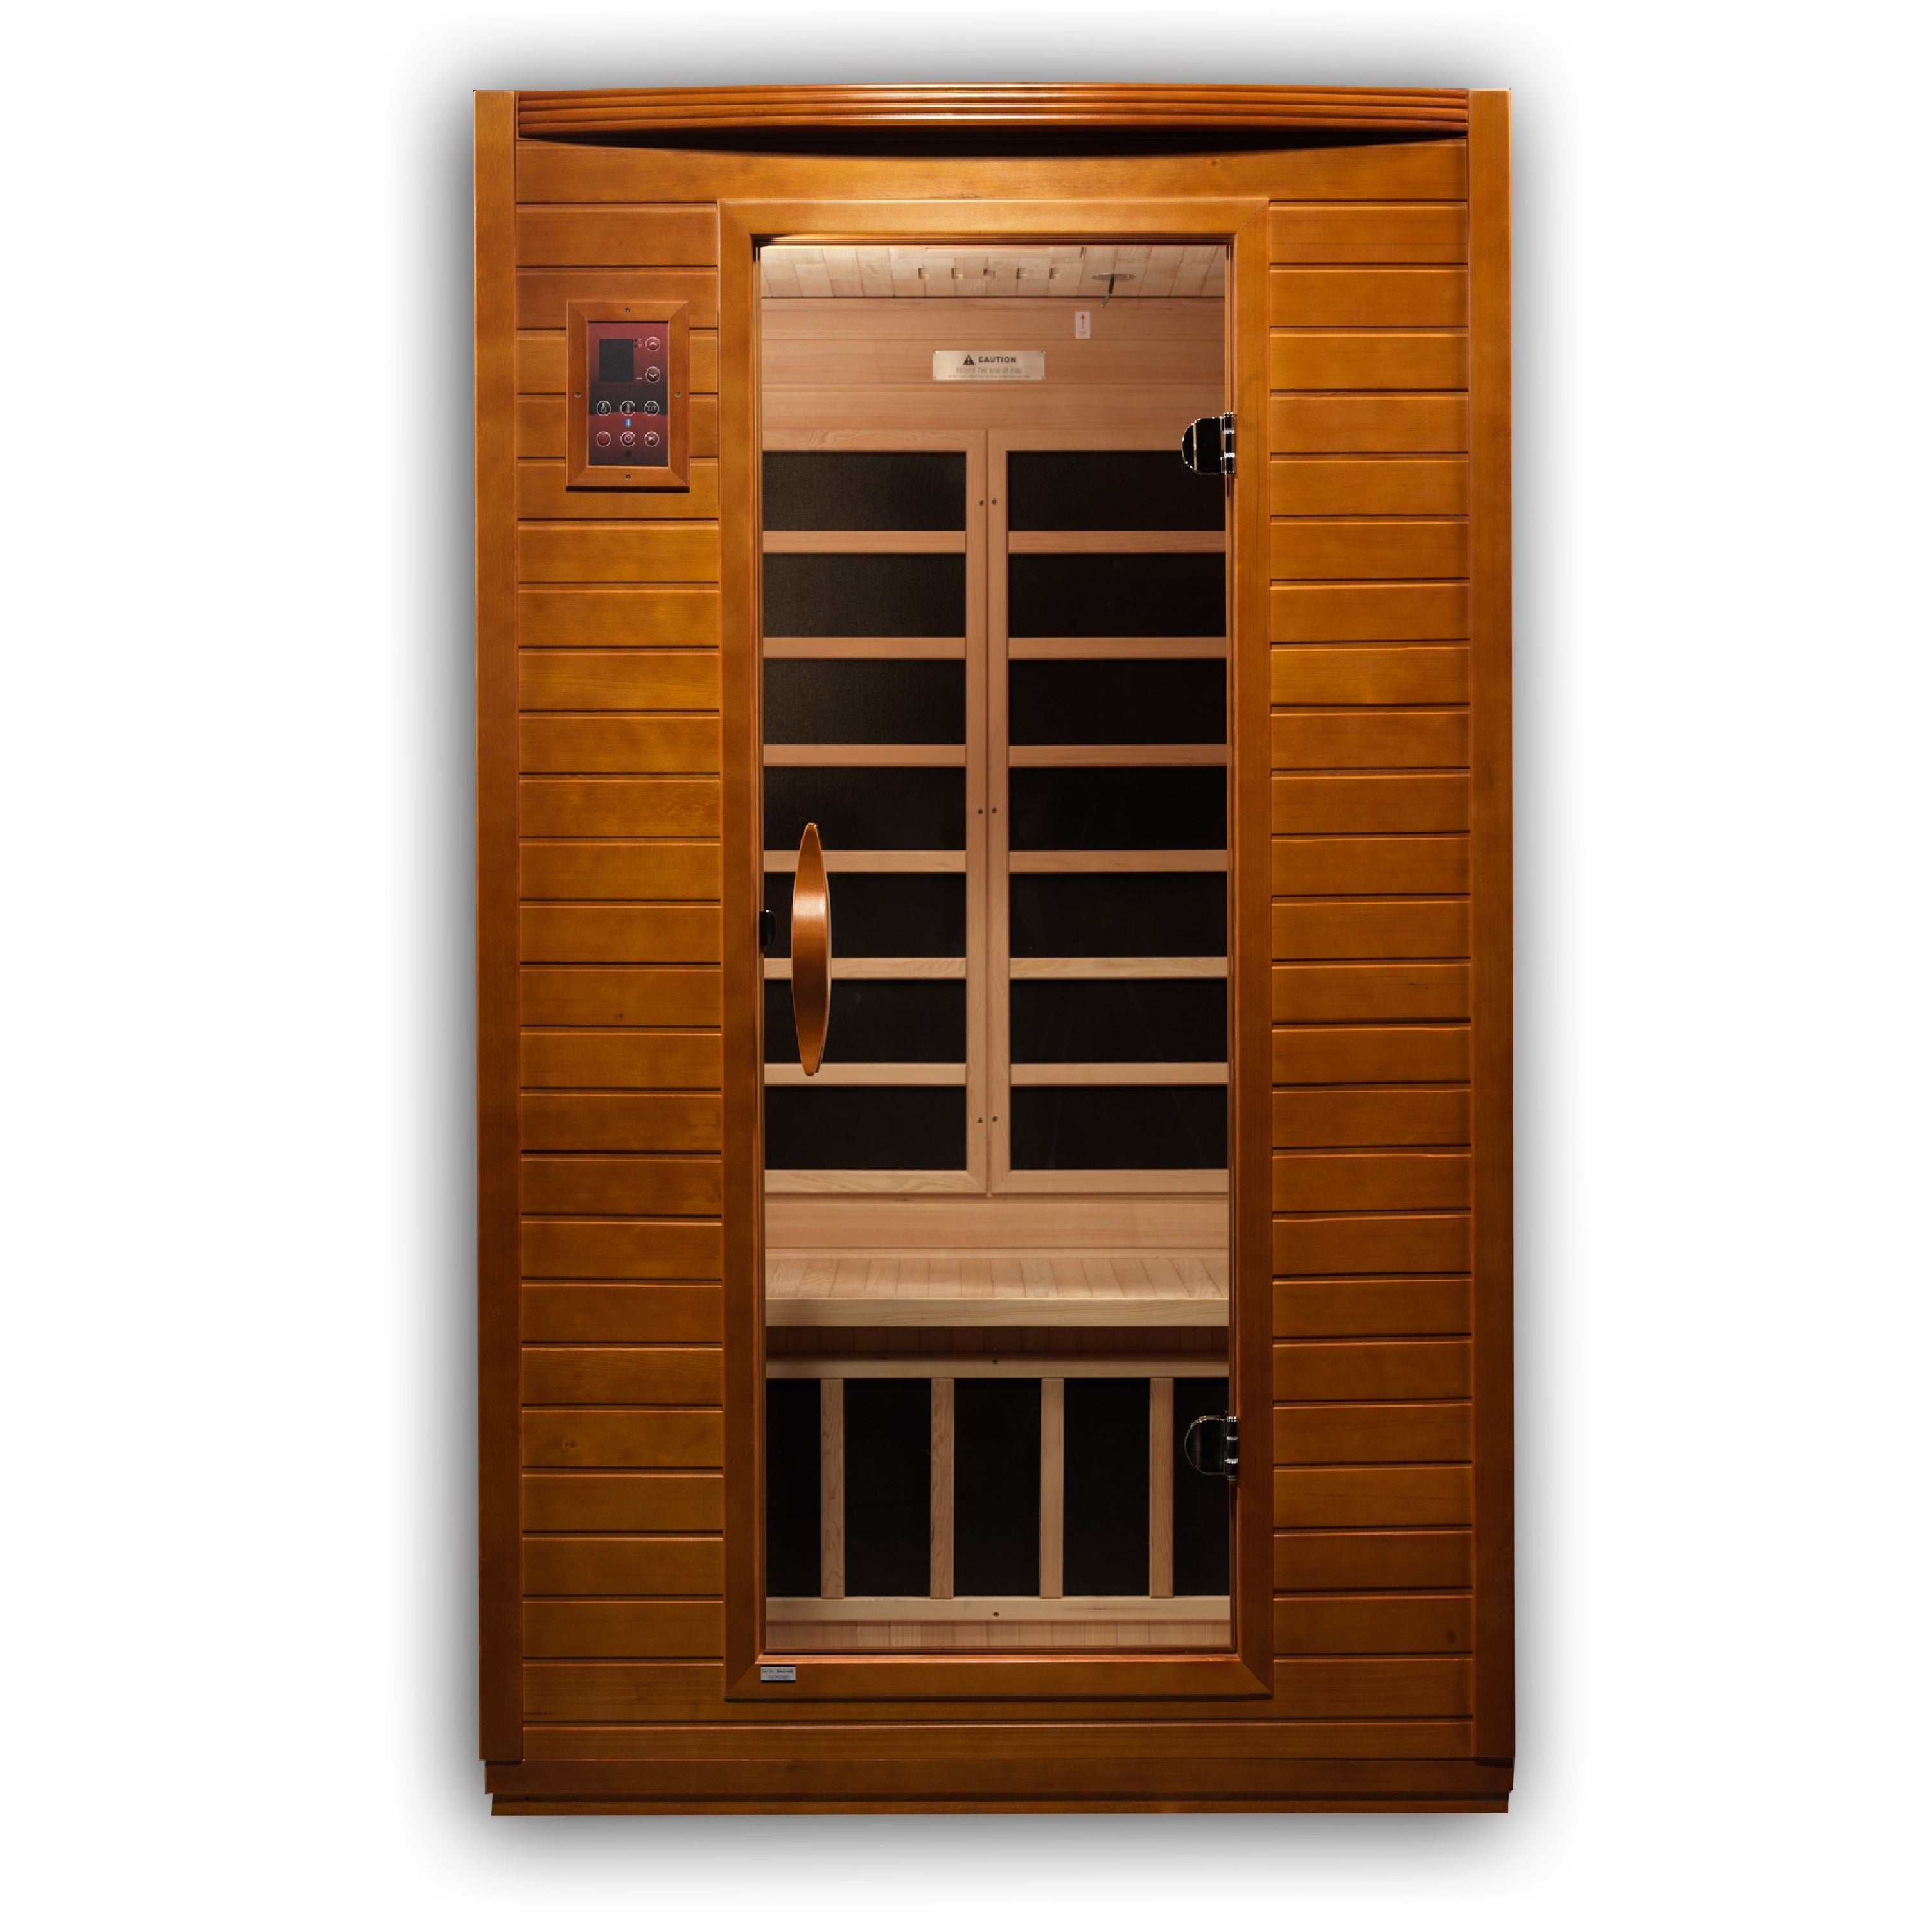 DYN-6202-03 Dynamic Low EMF Far Infrared Sauna, Versailles Edition